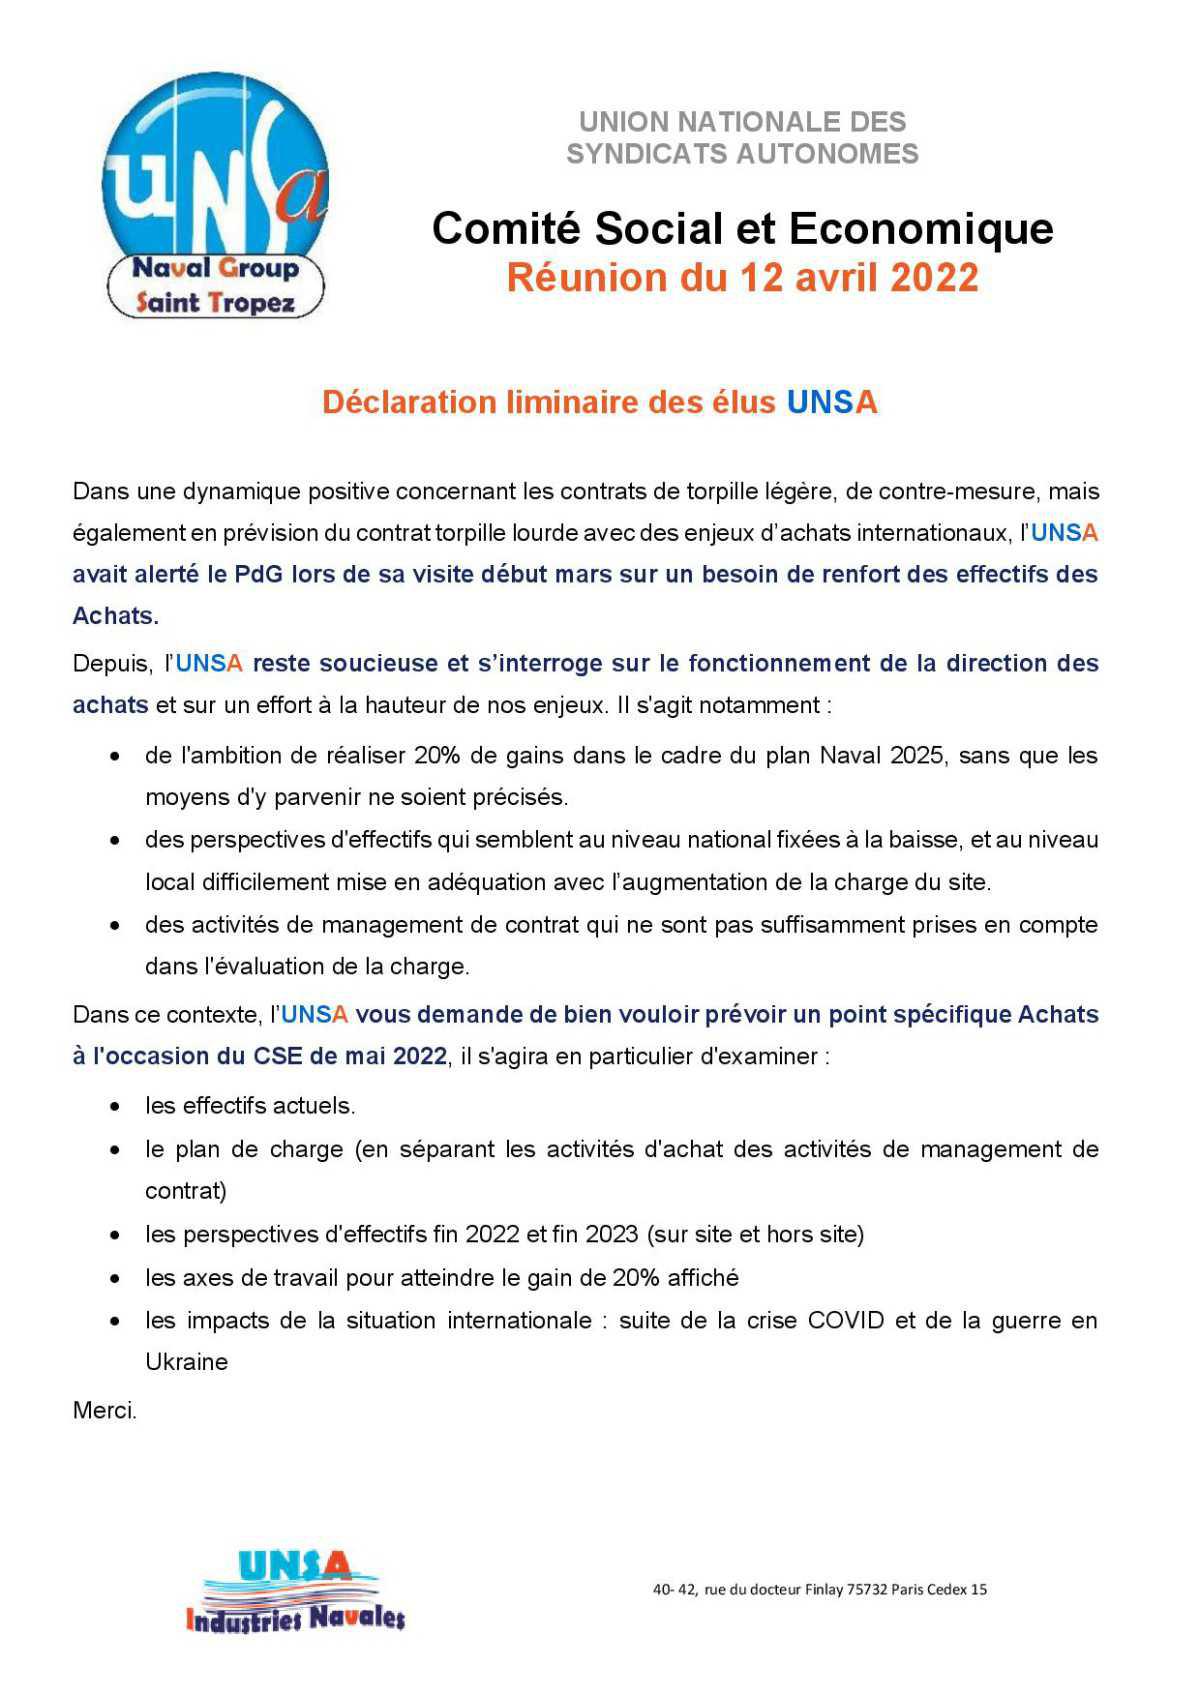 CSE de Saint Tropez - Réunion du 12 avril 2022 - Déclaration Liminaire